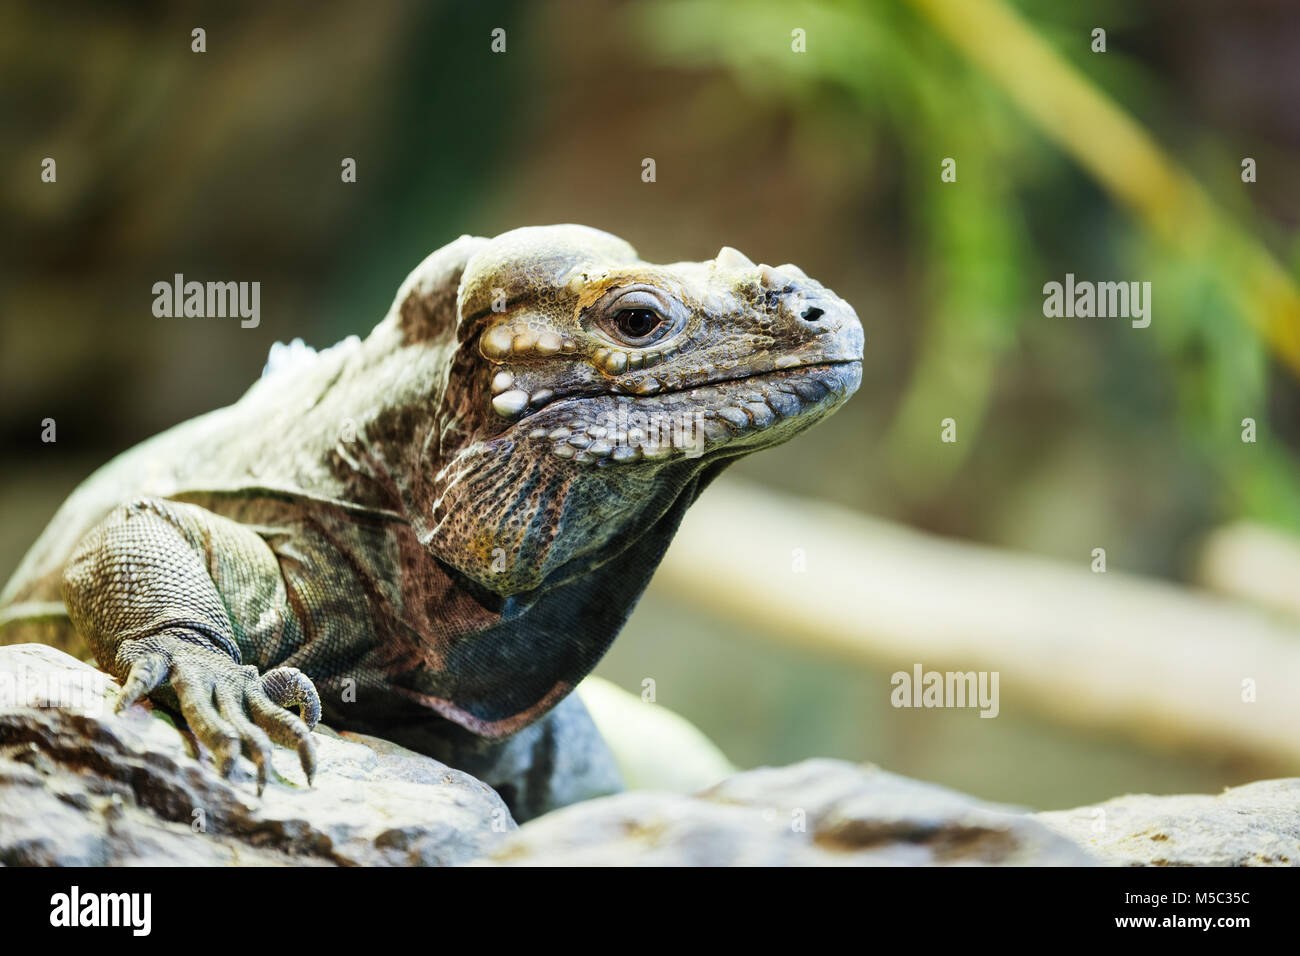 Reptil leguan sentándose en una roca Foto de stock